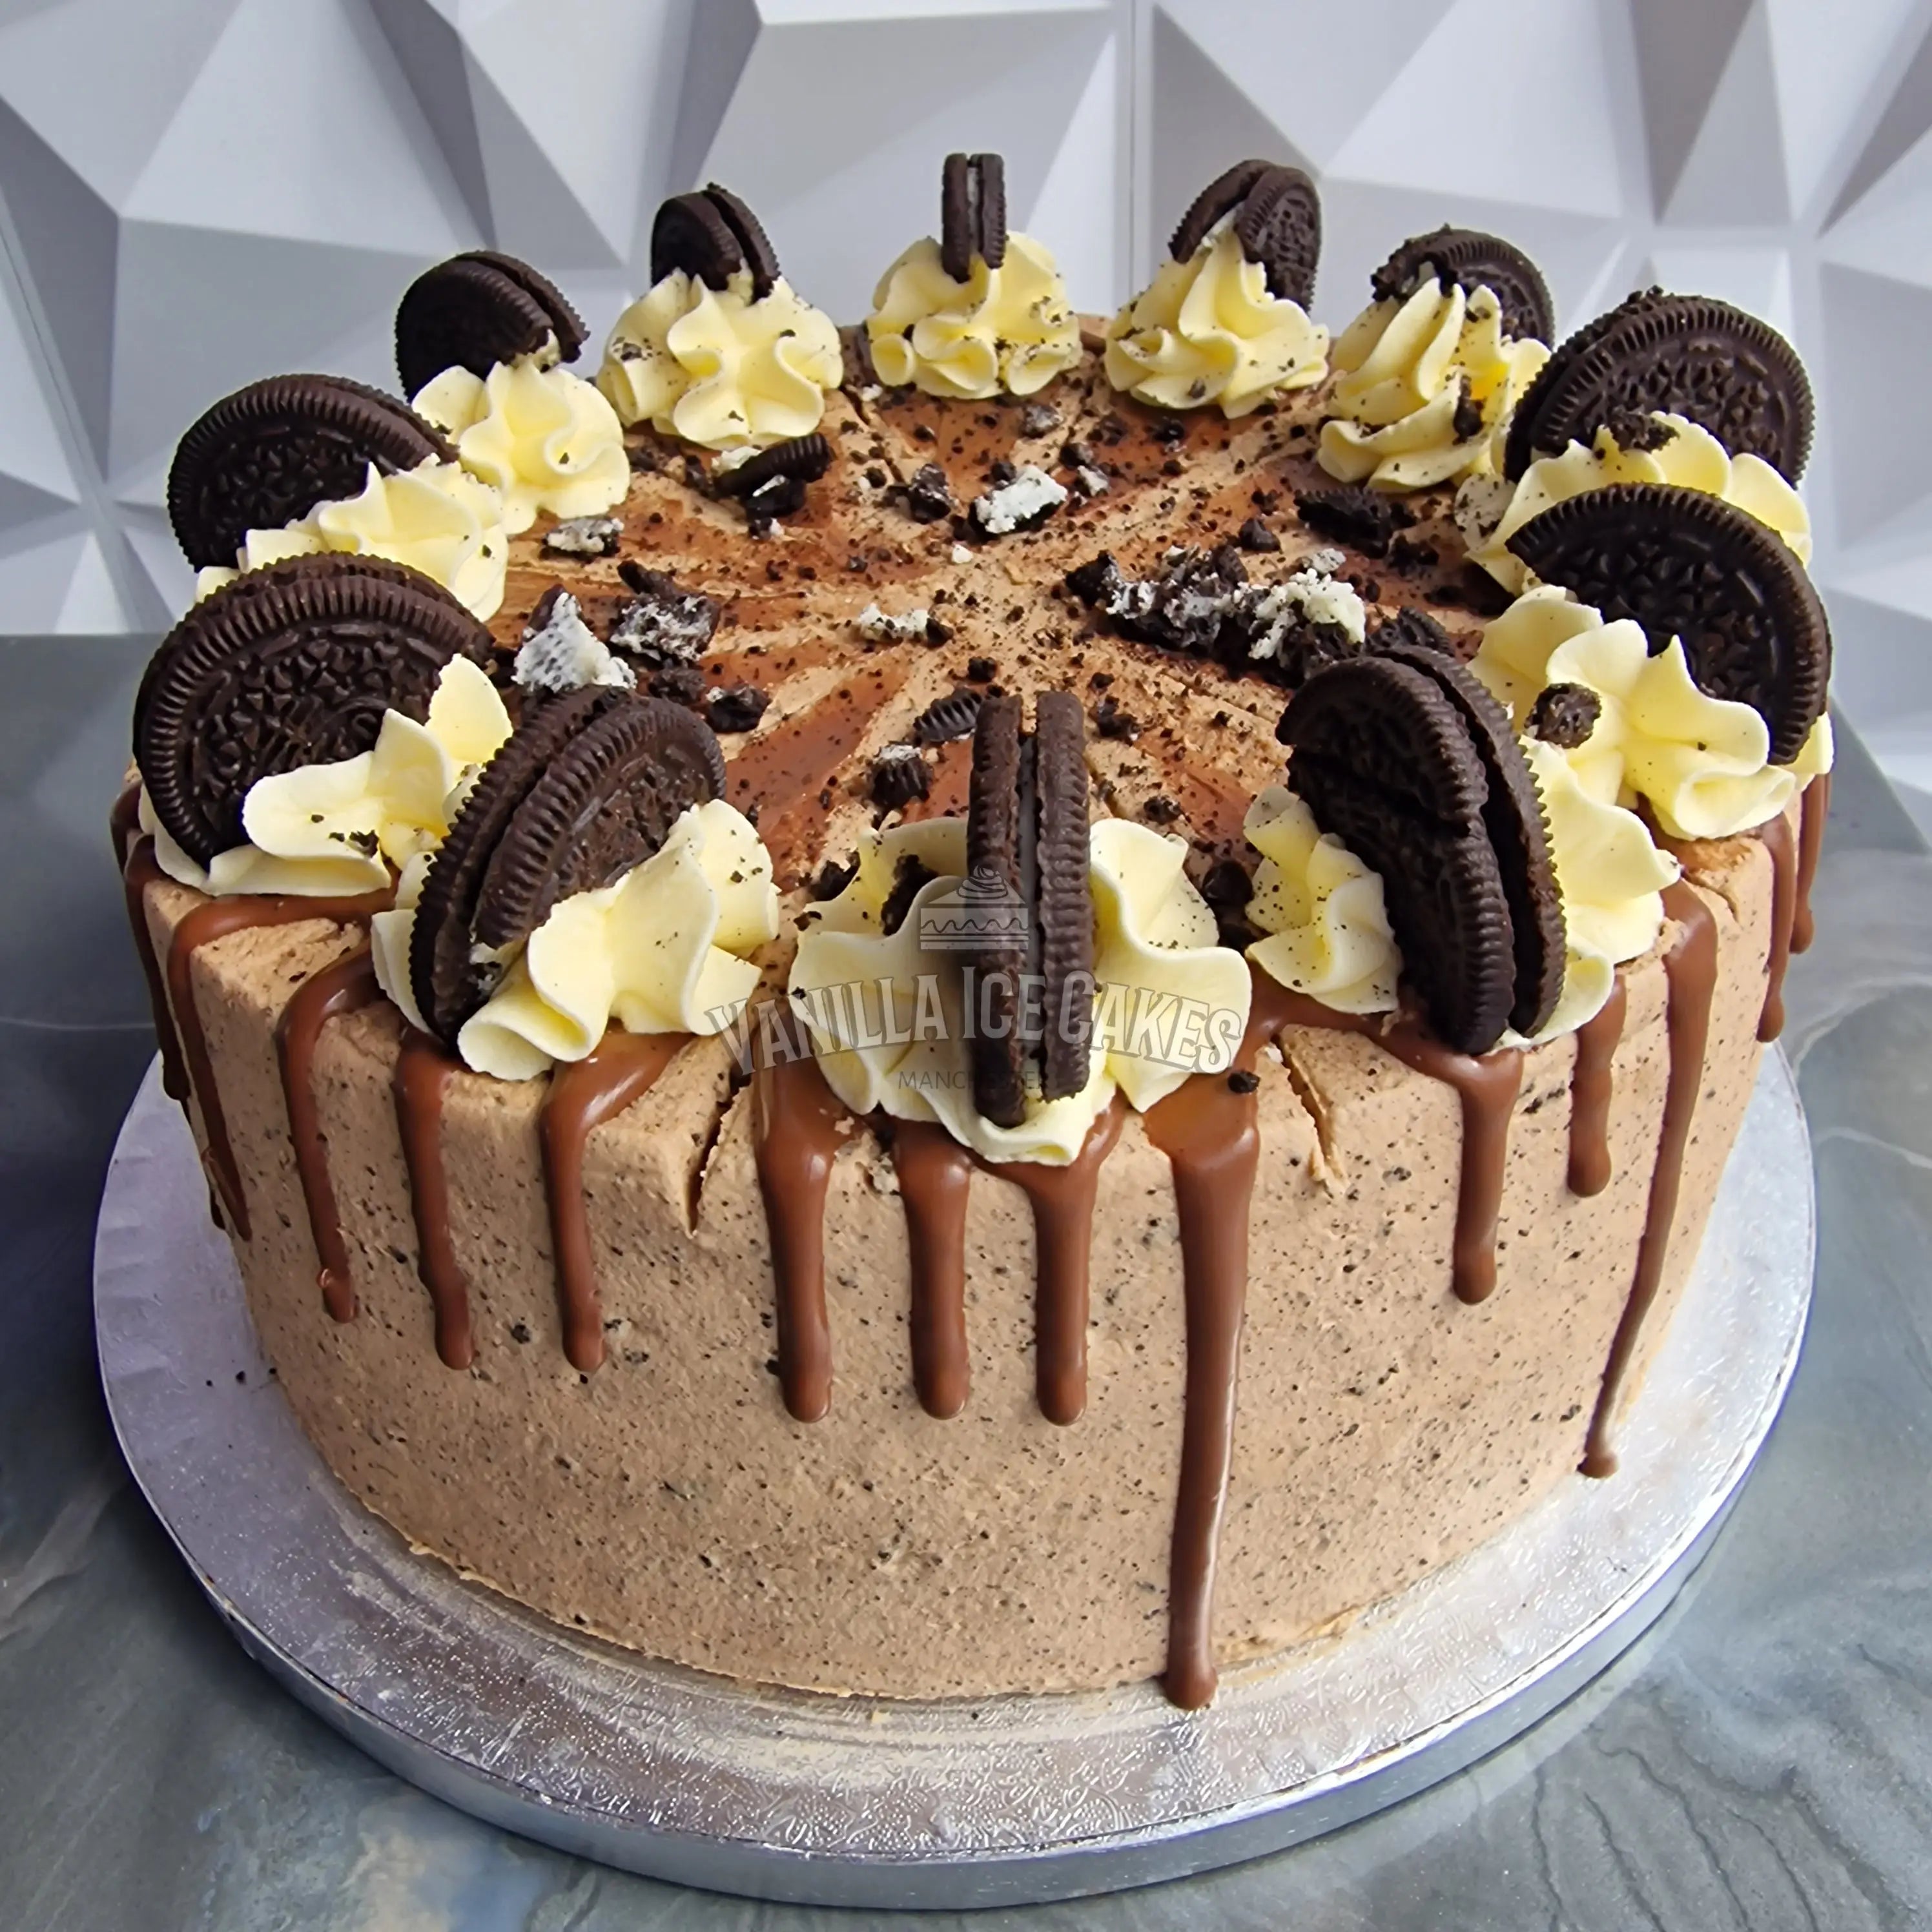 Vanilla Ice Cakes - Oreo & Nutella Celebration Cake